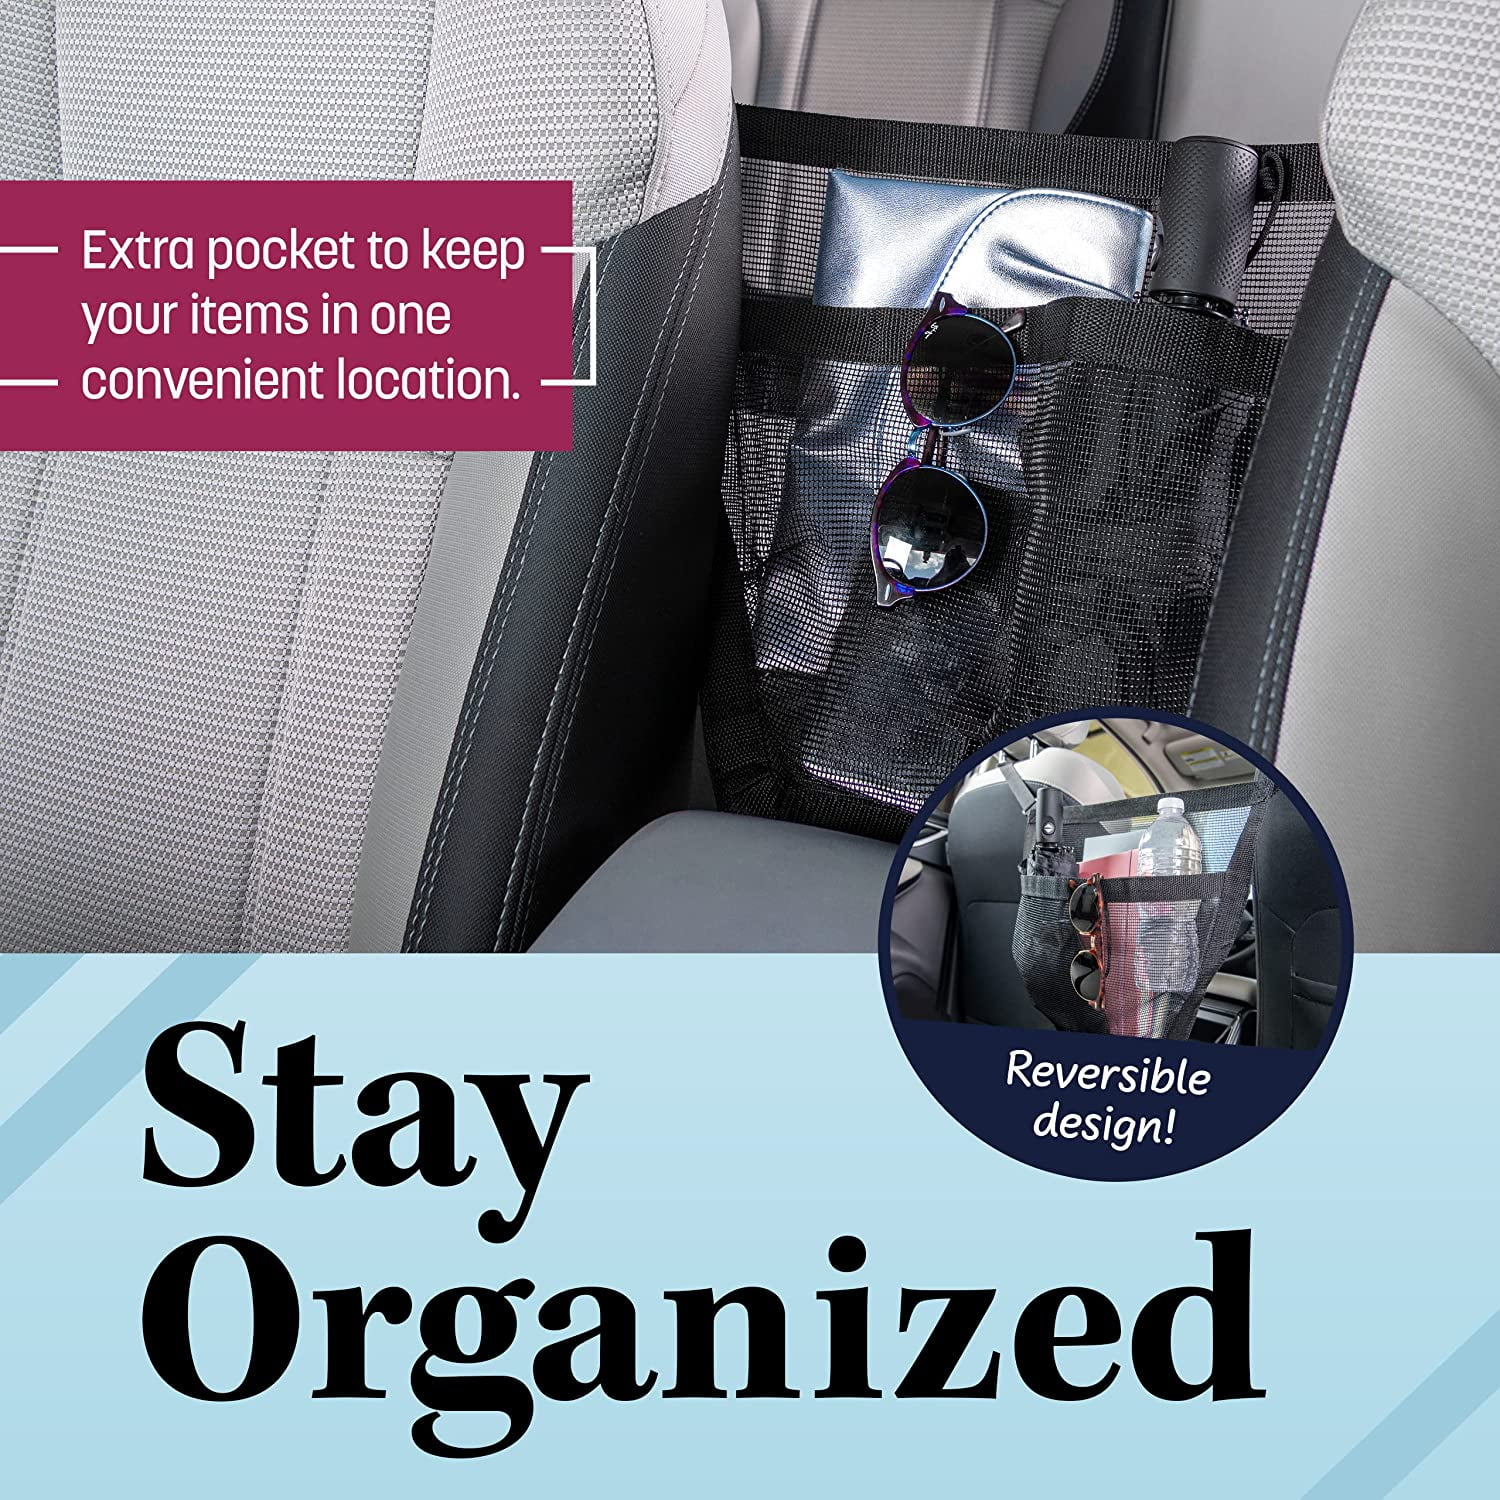 The Purse Net Car Net Pocket Handbag Holder Between Seats w/4 Grocery Bag  Headrest Hooks | Purse Holder for Car | Net Car Handbag Holder w/2 Cargo